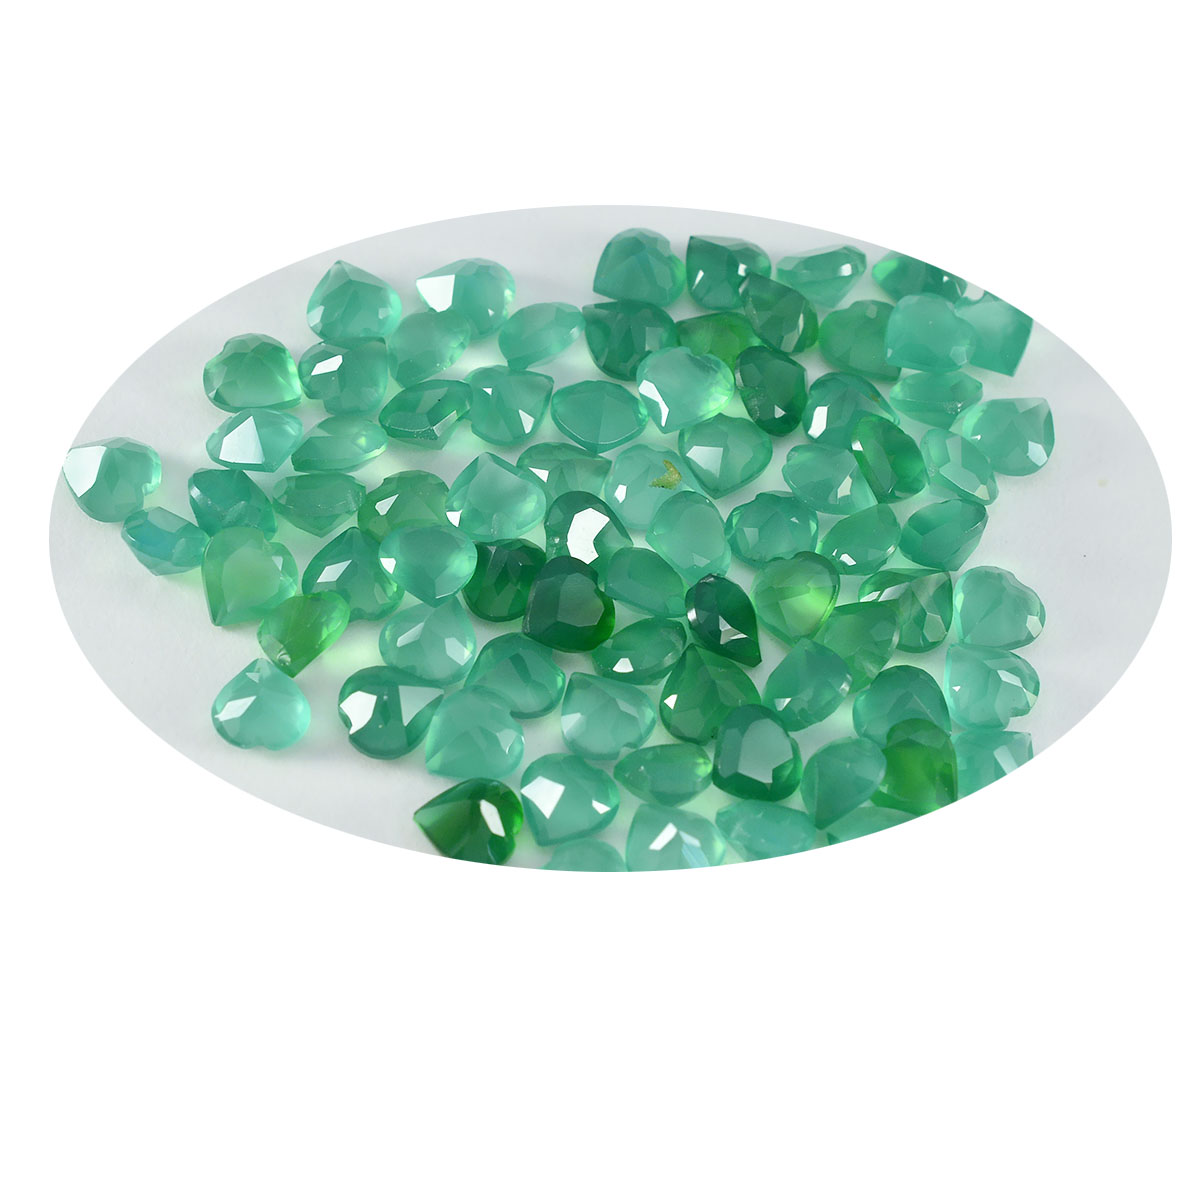 riyogems 1 шт. натуральный зеленый оникс ограненный 5x5 мм в форме сердца привлекательное качество свободный драгоценный камень